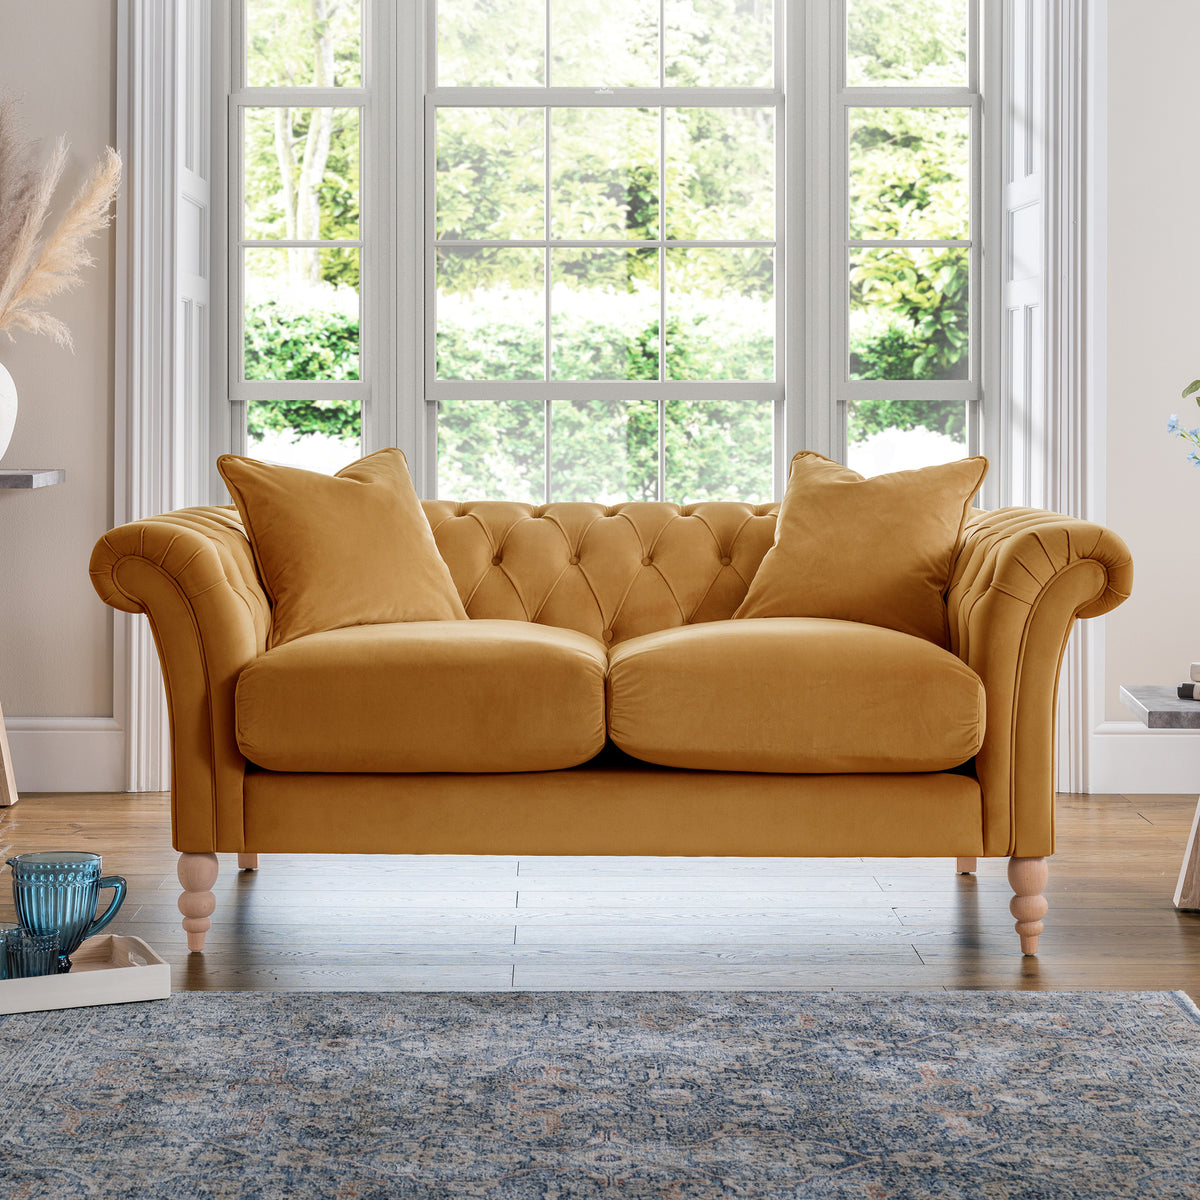 Balmoral Ochre Velvet Chesterfield 2 Seater Couch for living room